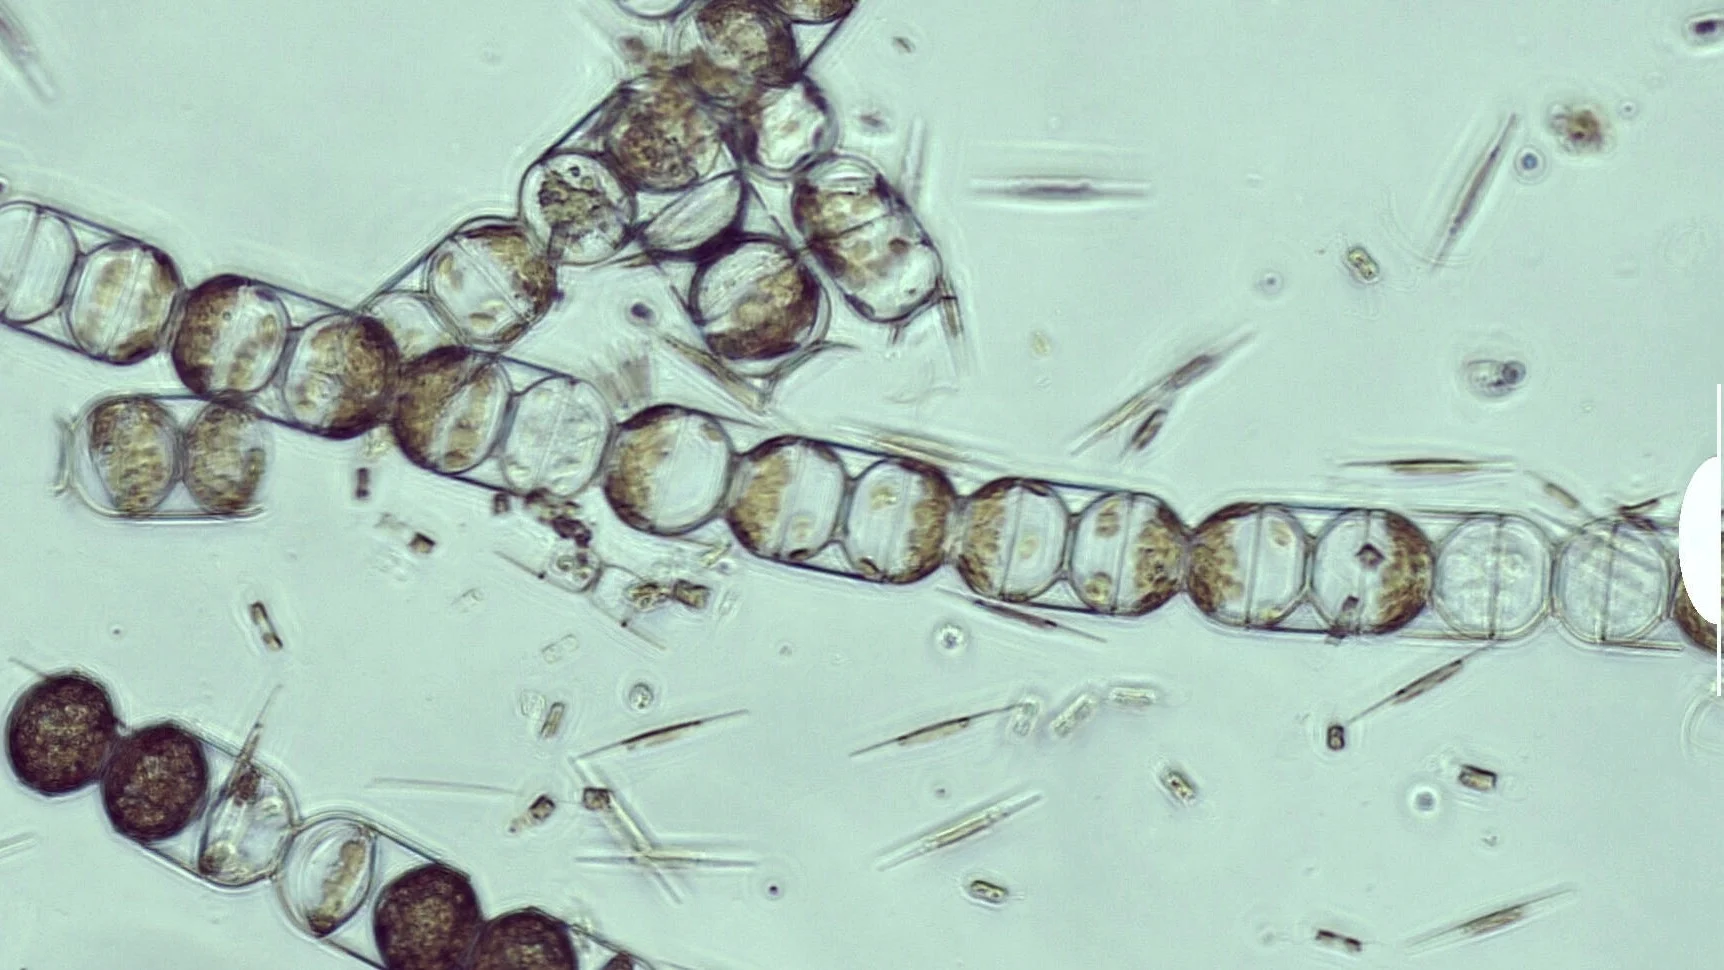 Microscopic view of microplastics in melosira arctica